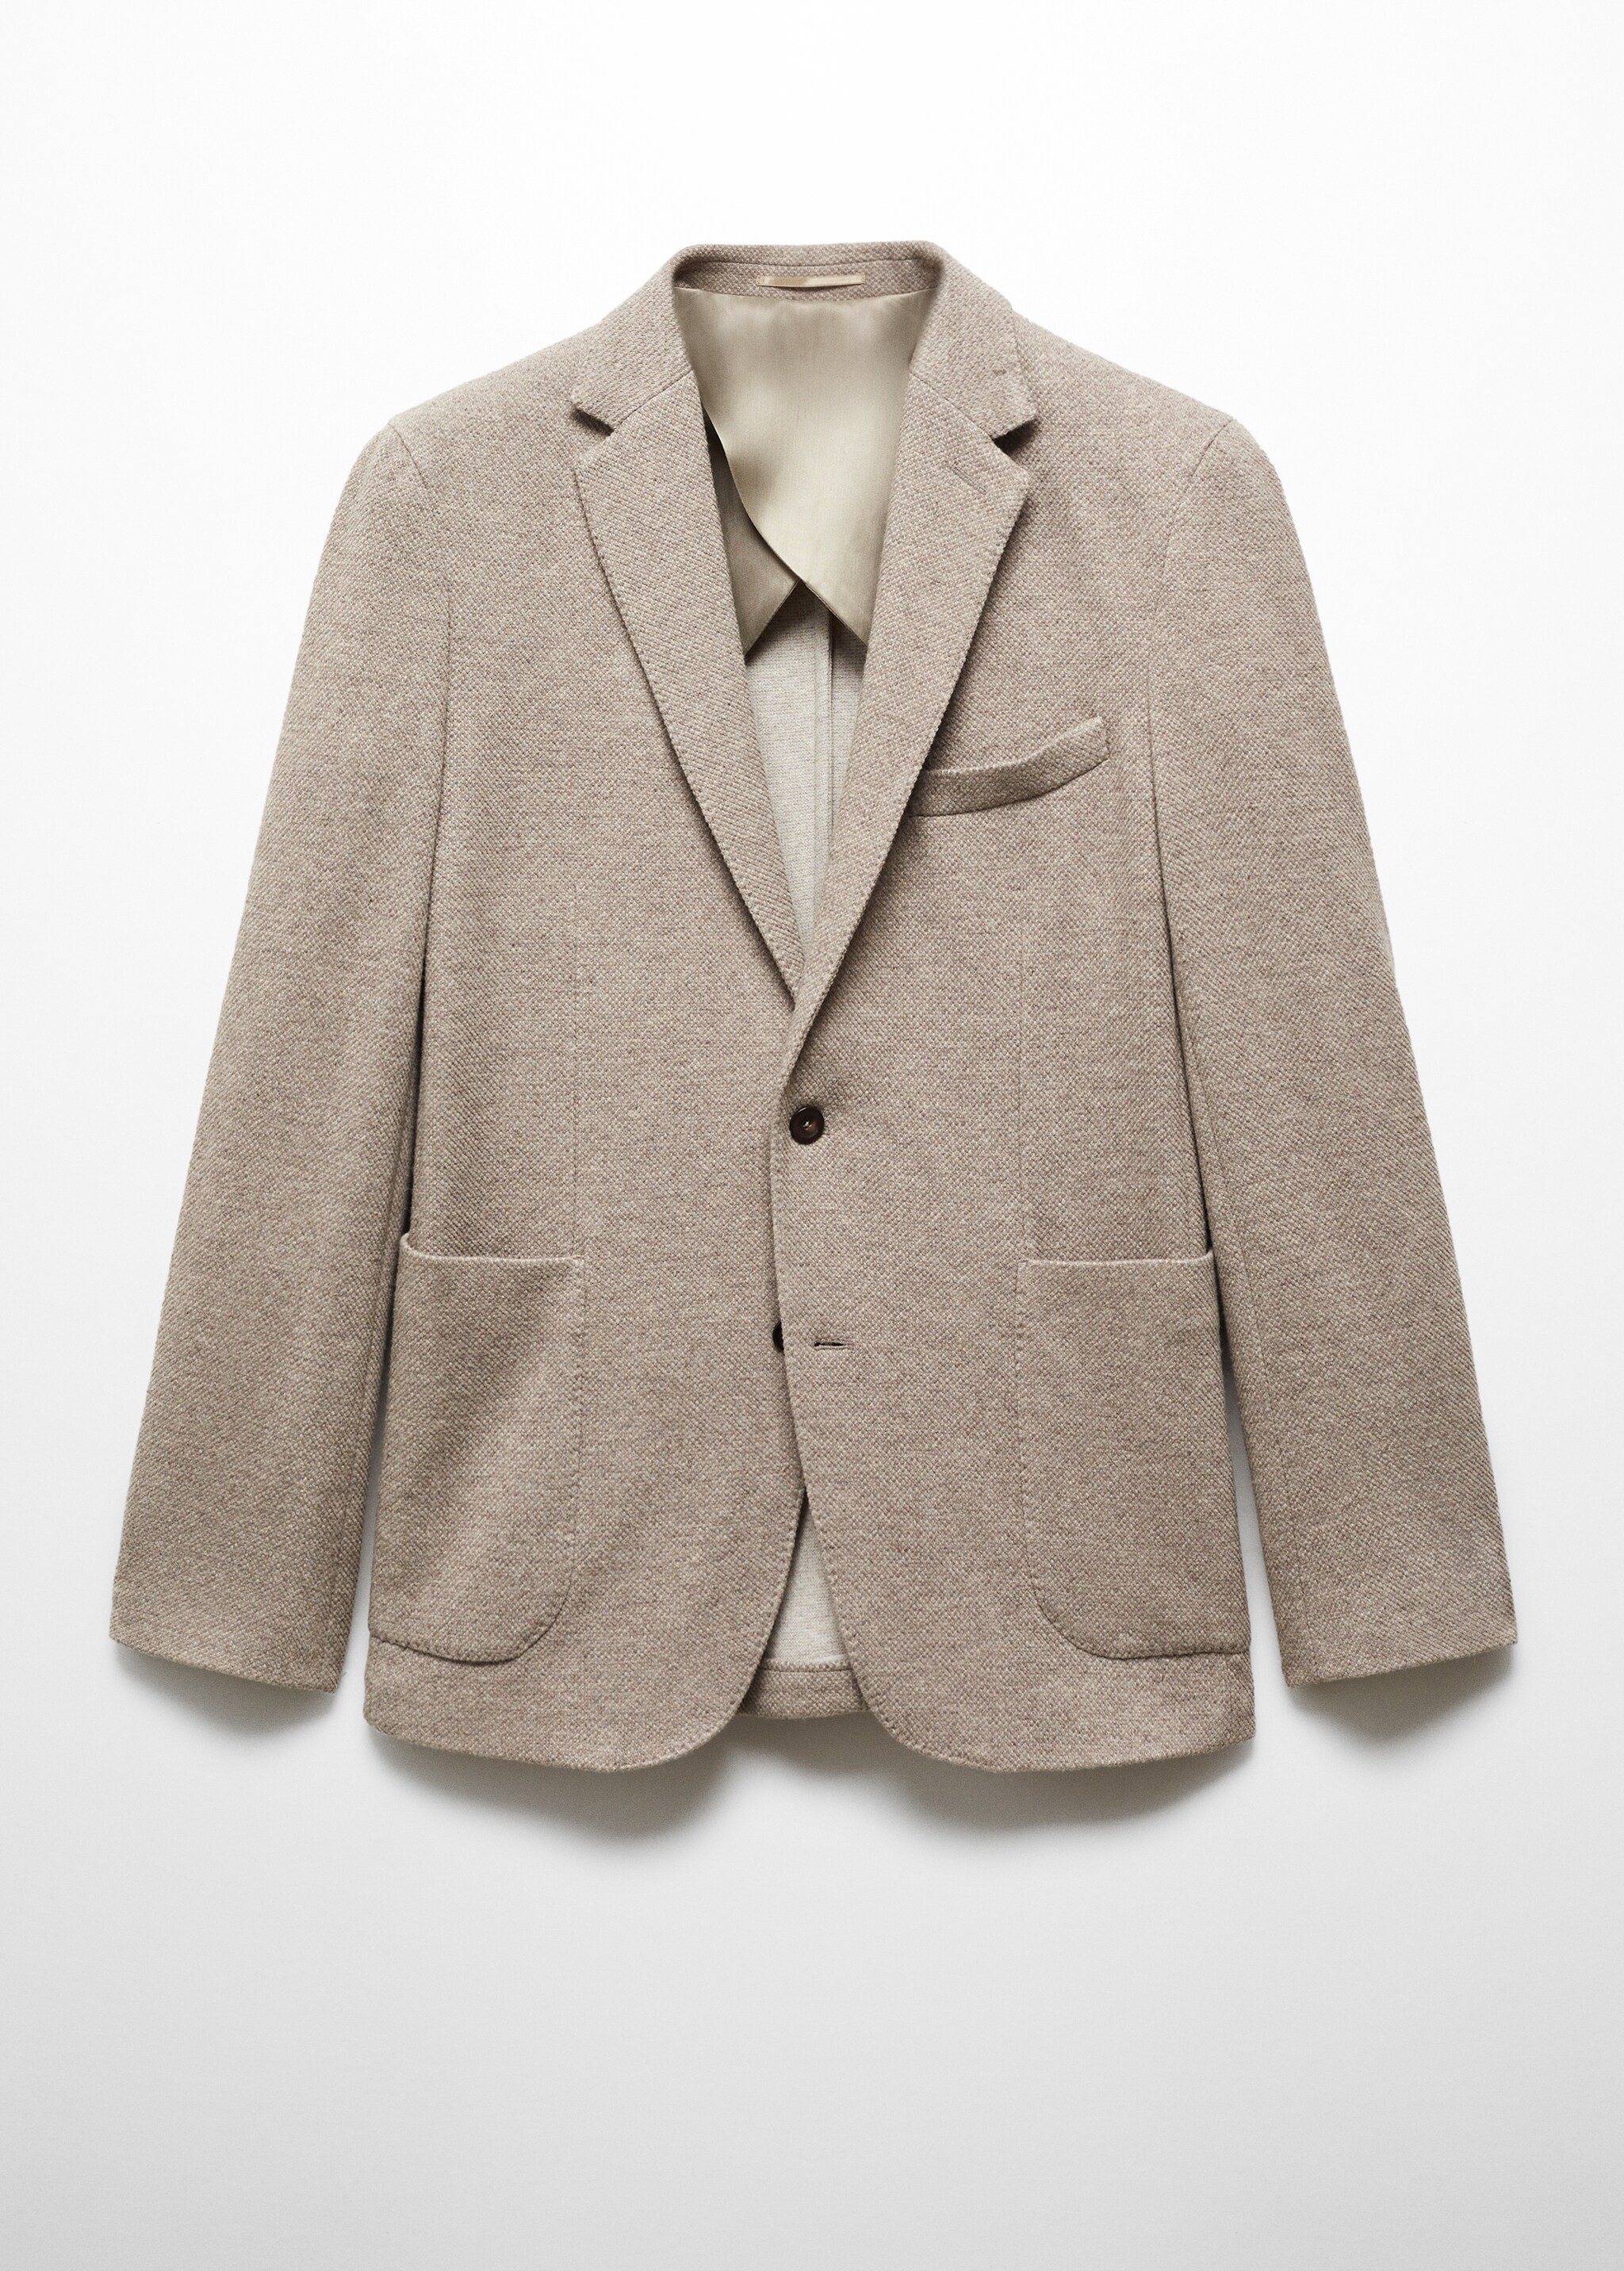 Трикотажный пиджак из чистой шерсти  - Изделие без модели